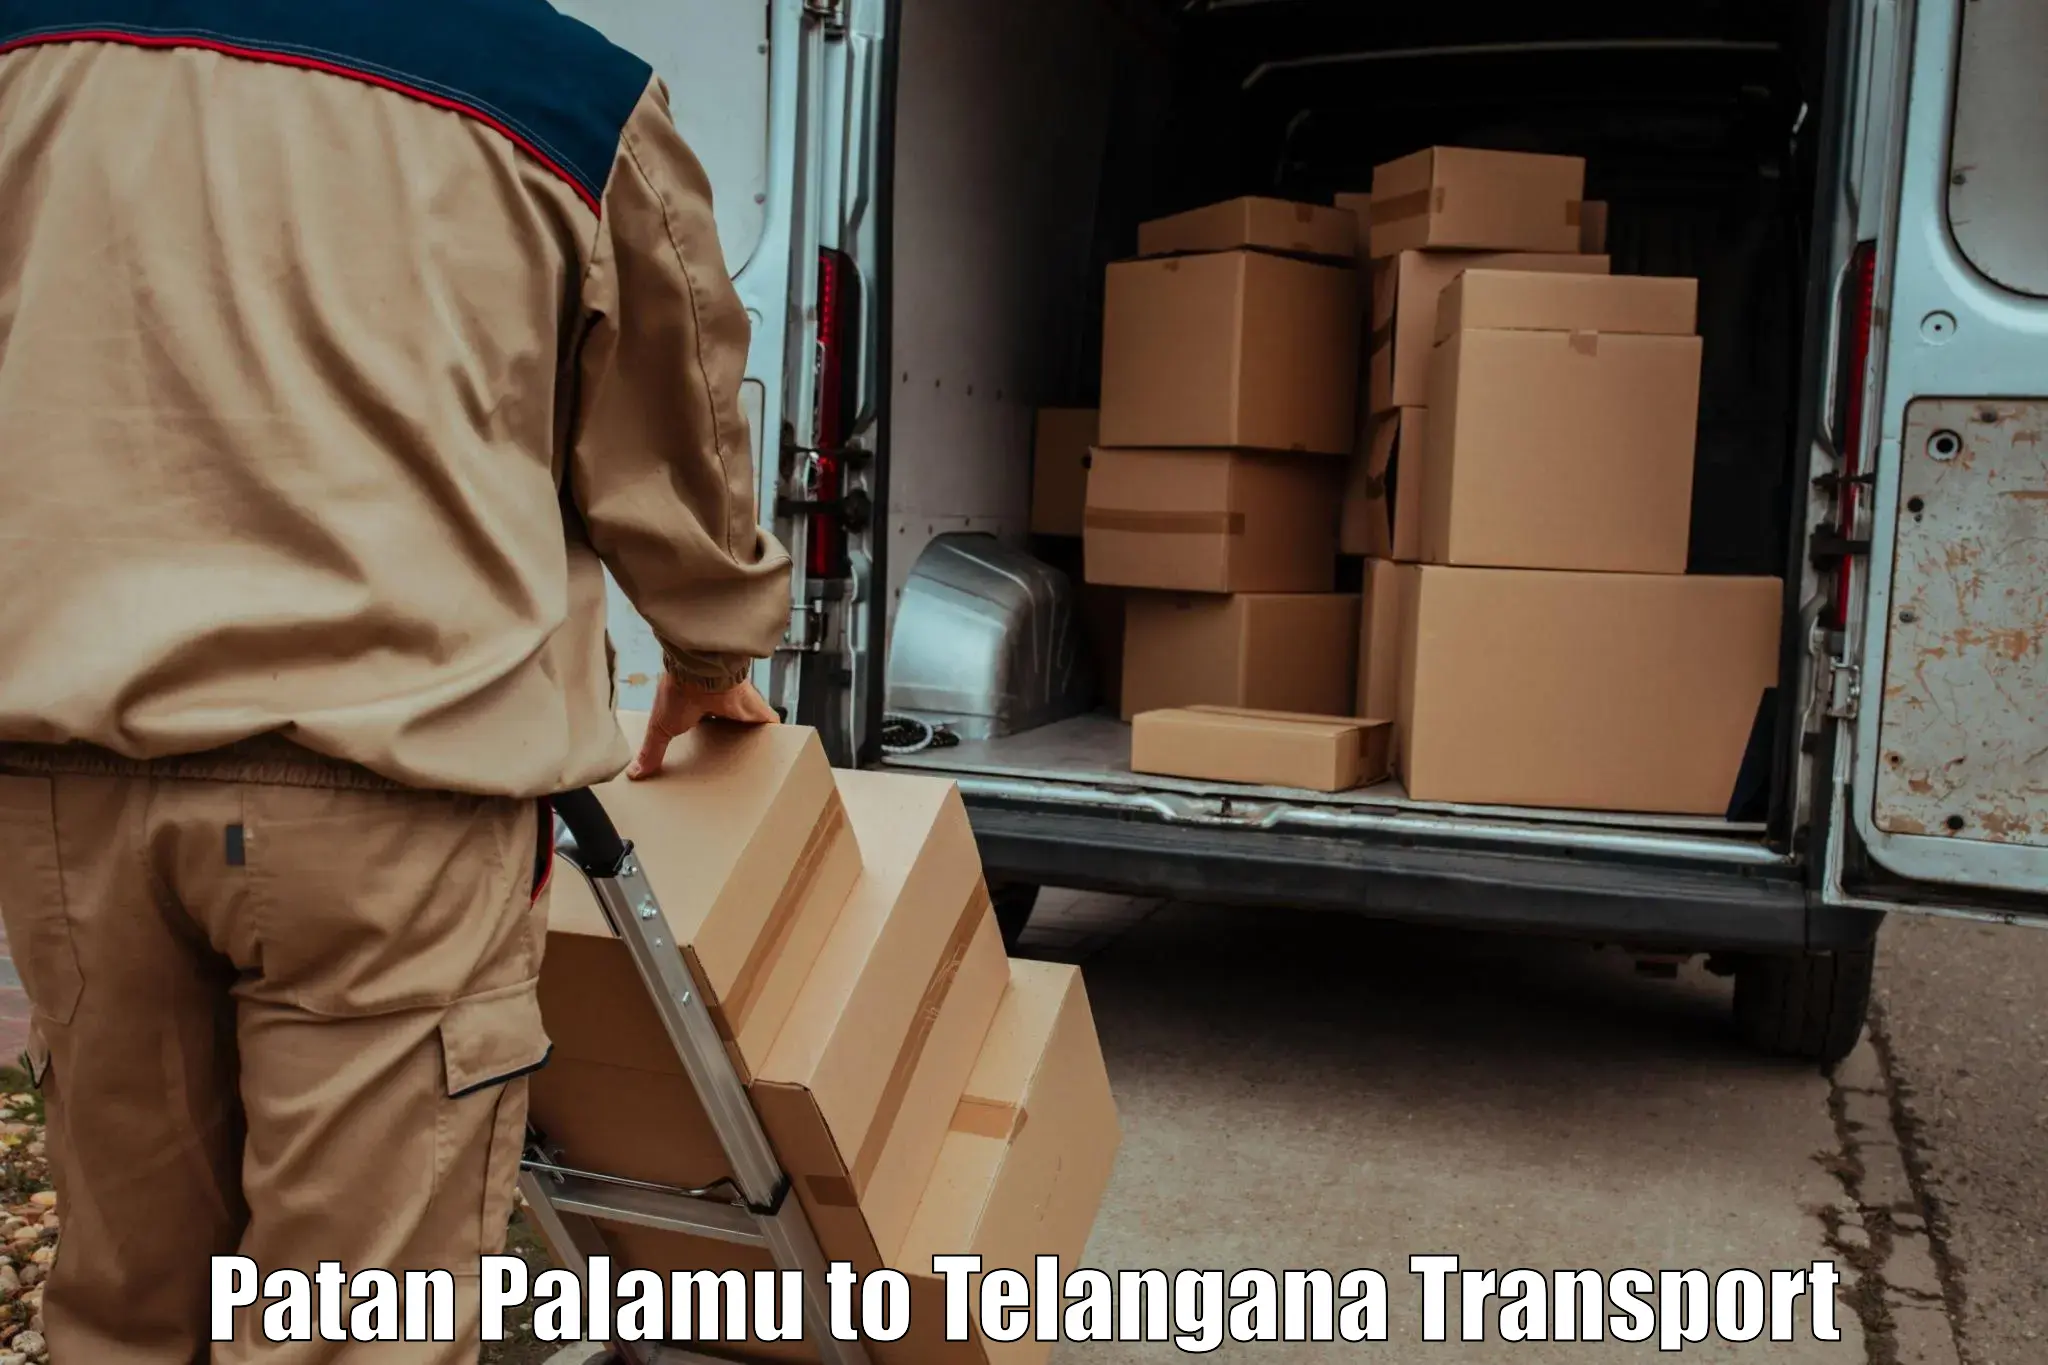 Inland transportation services Patan Palamu to Yellandu